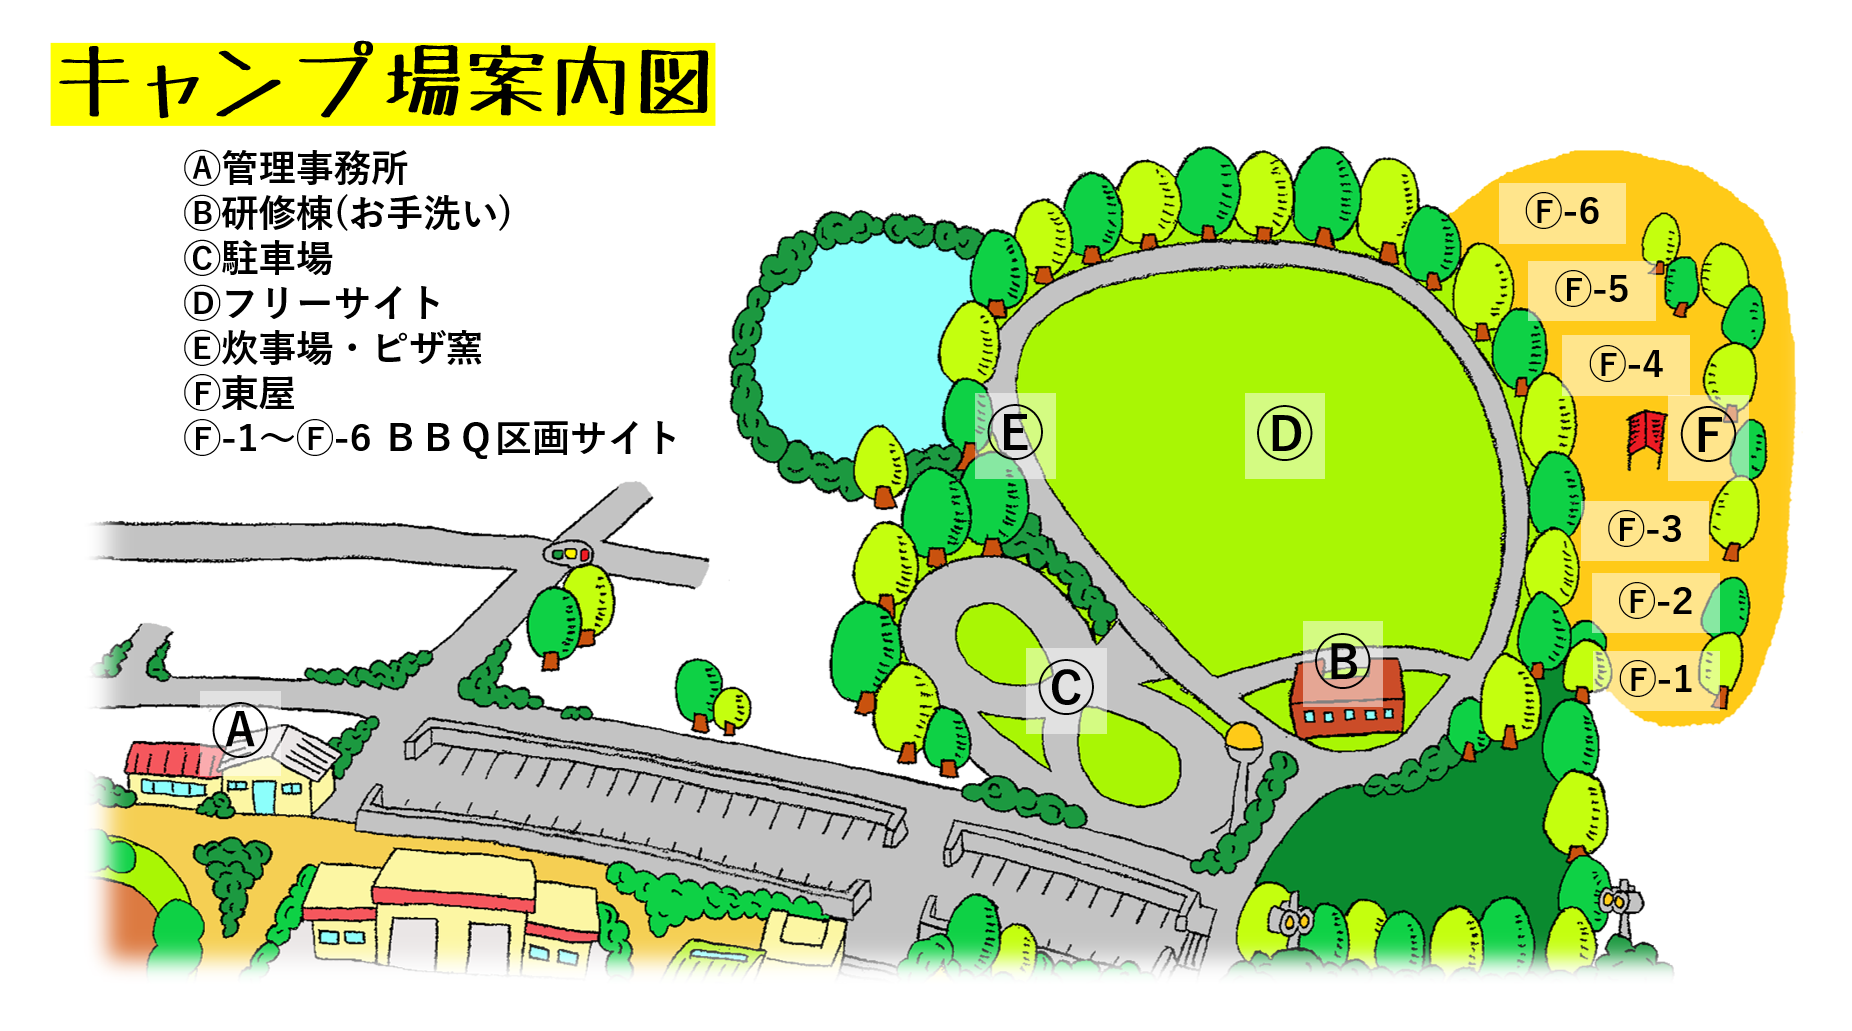 大曽公園キャンプ場